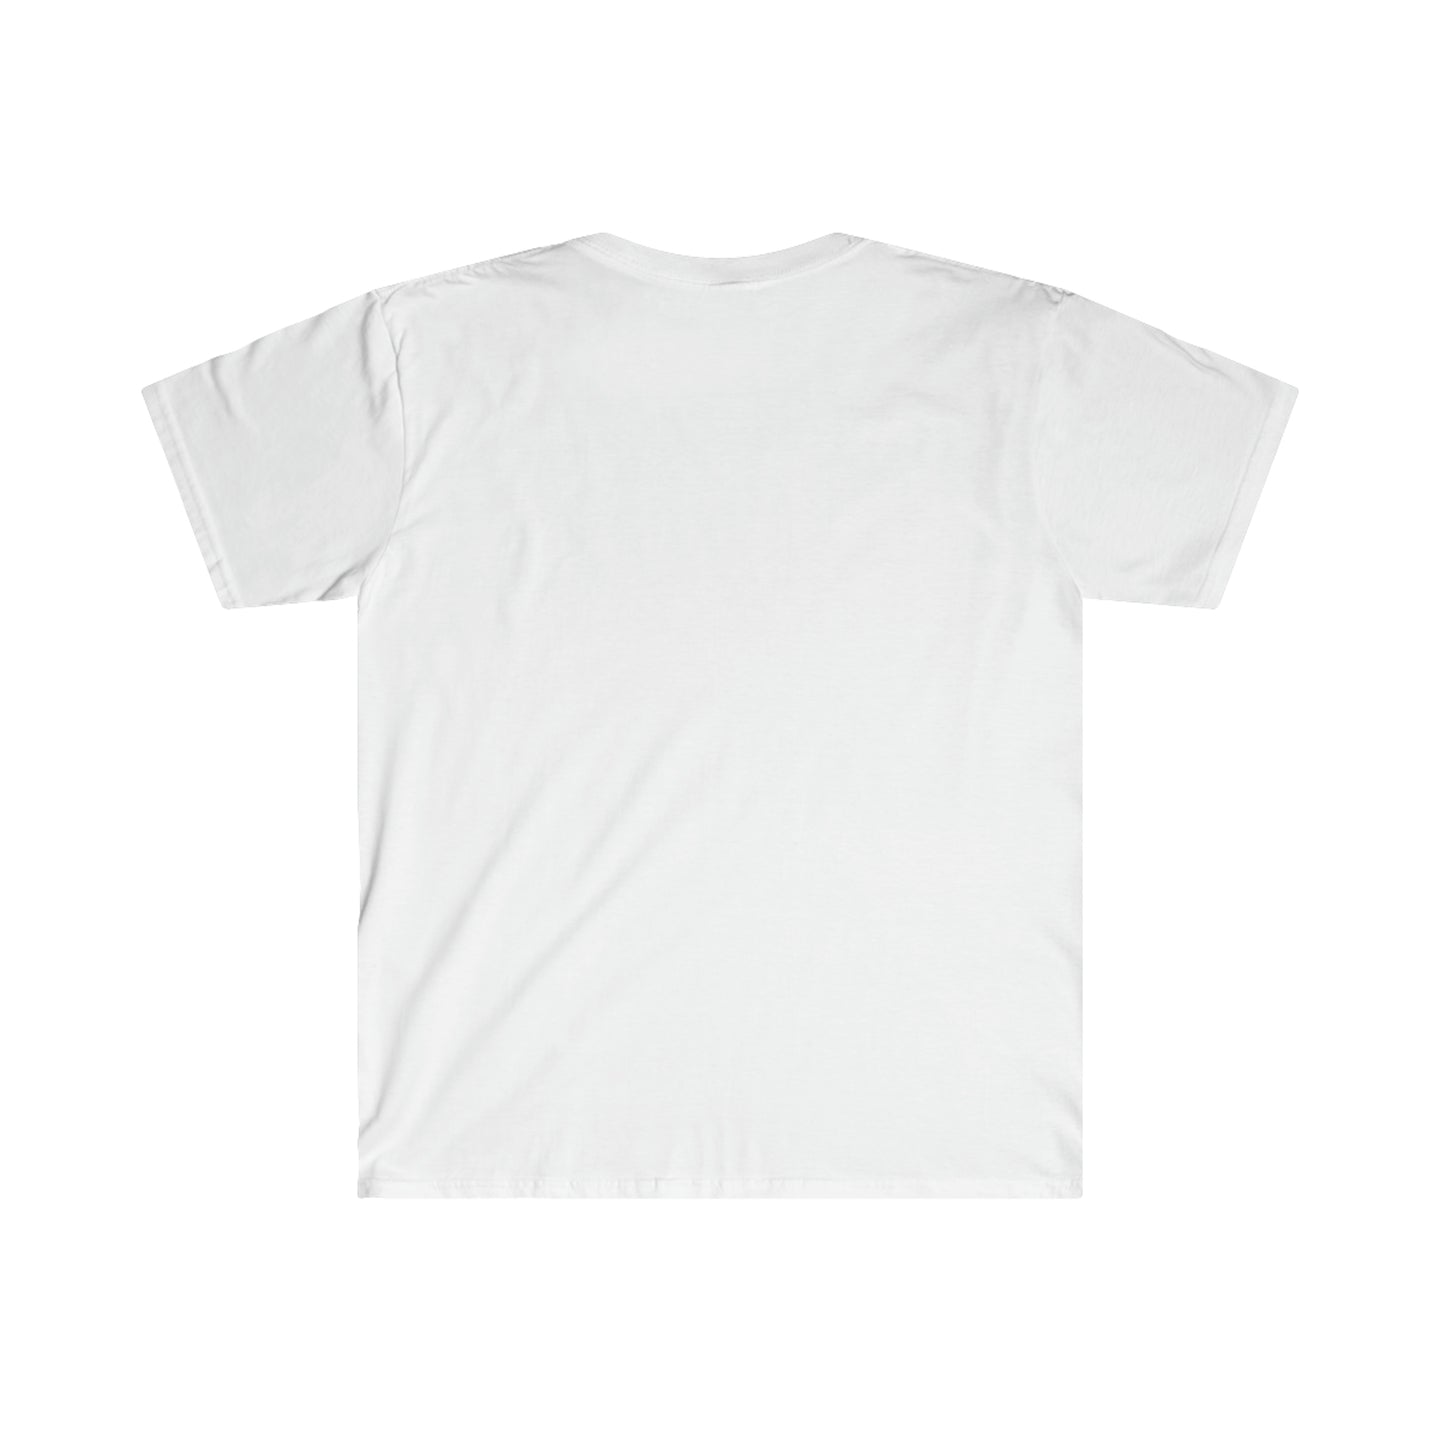 Unisex Stiky Gum Shoe T-Shirt